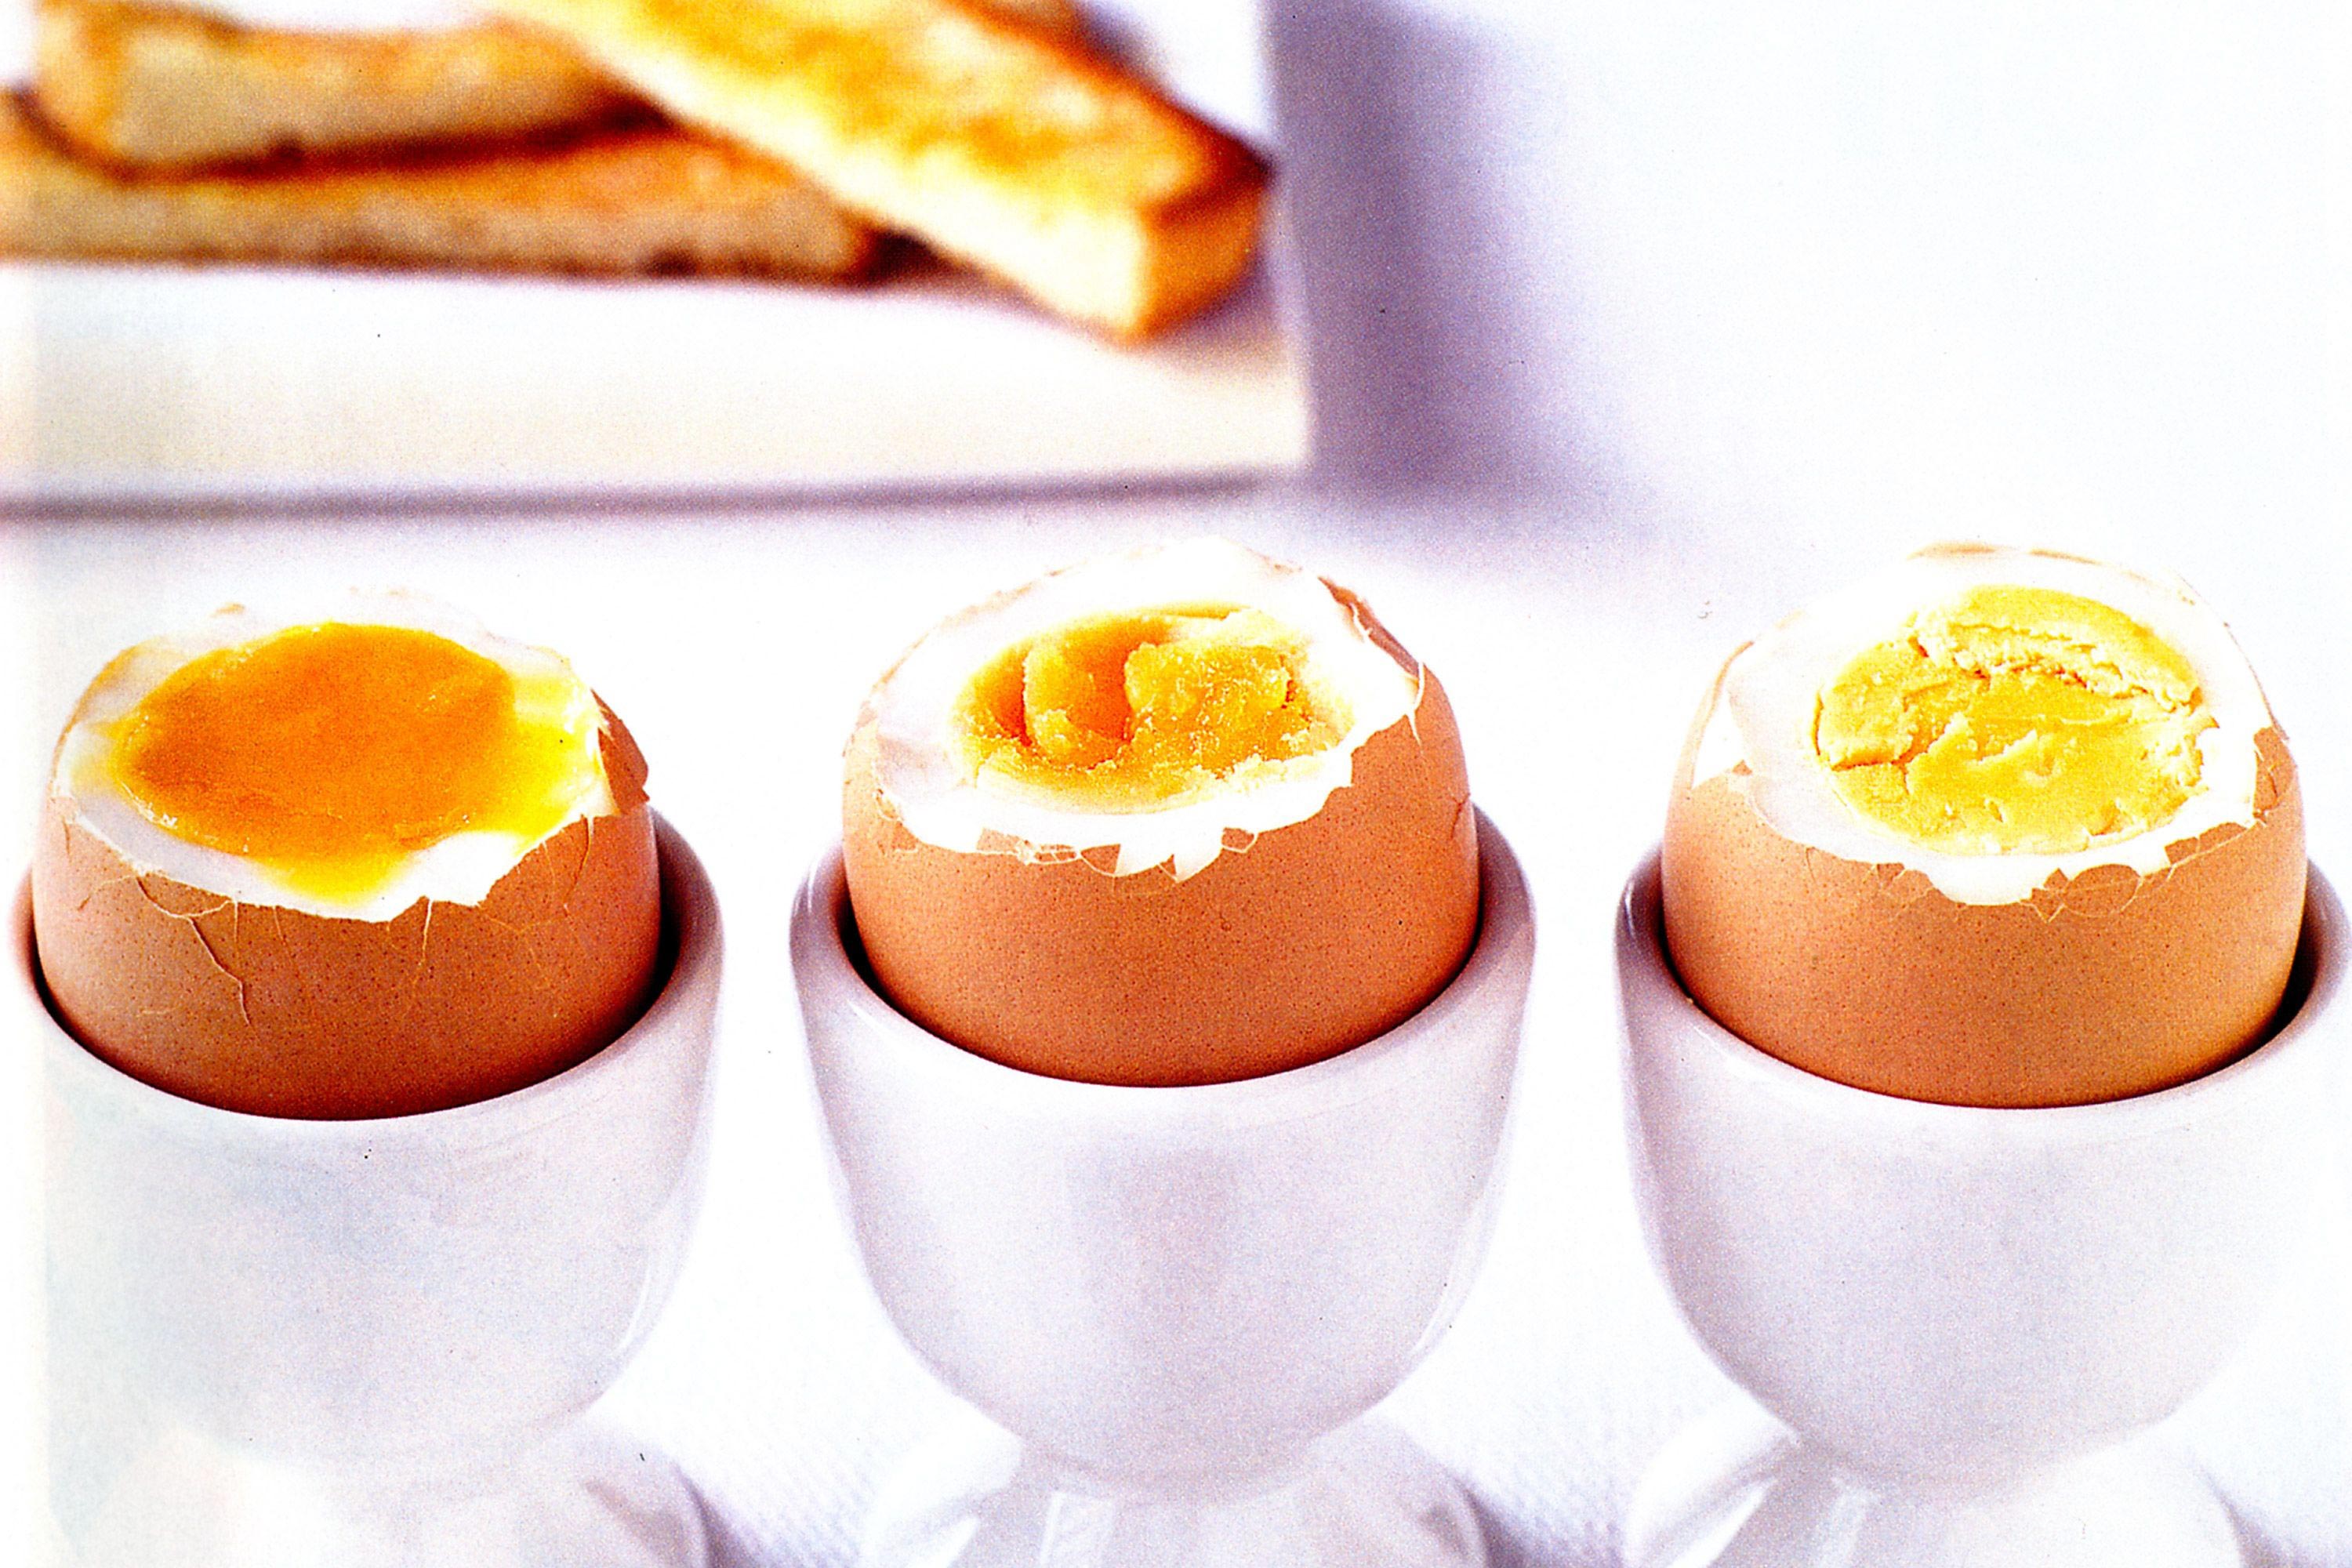 Сколько кипеть яйца всмятку. Яйцо в смятку в мешочек и вкрутую. Яйца всмятку в мешочек и вкрутую. Яйца всмятку в мешочек. Варёные яйца всмятку и в мешочек.